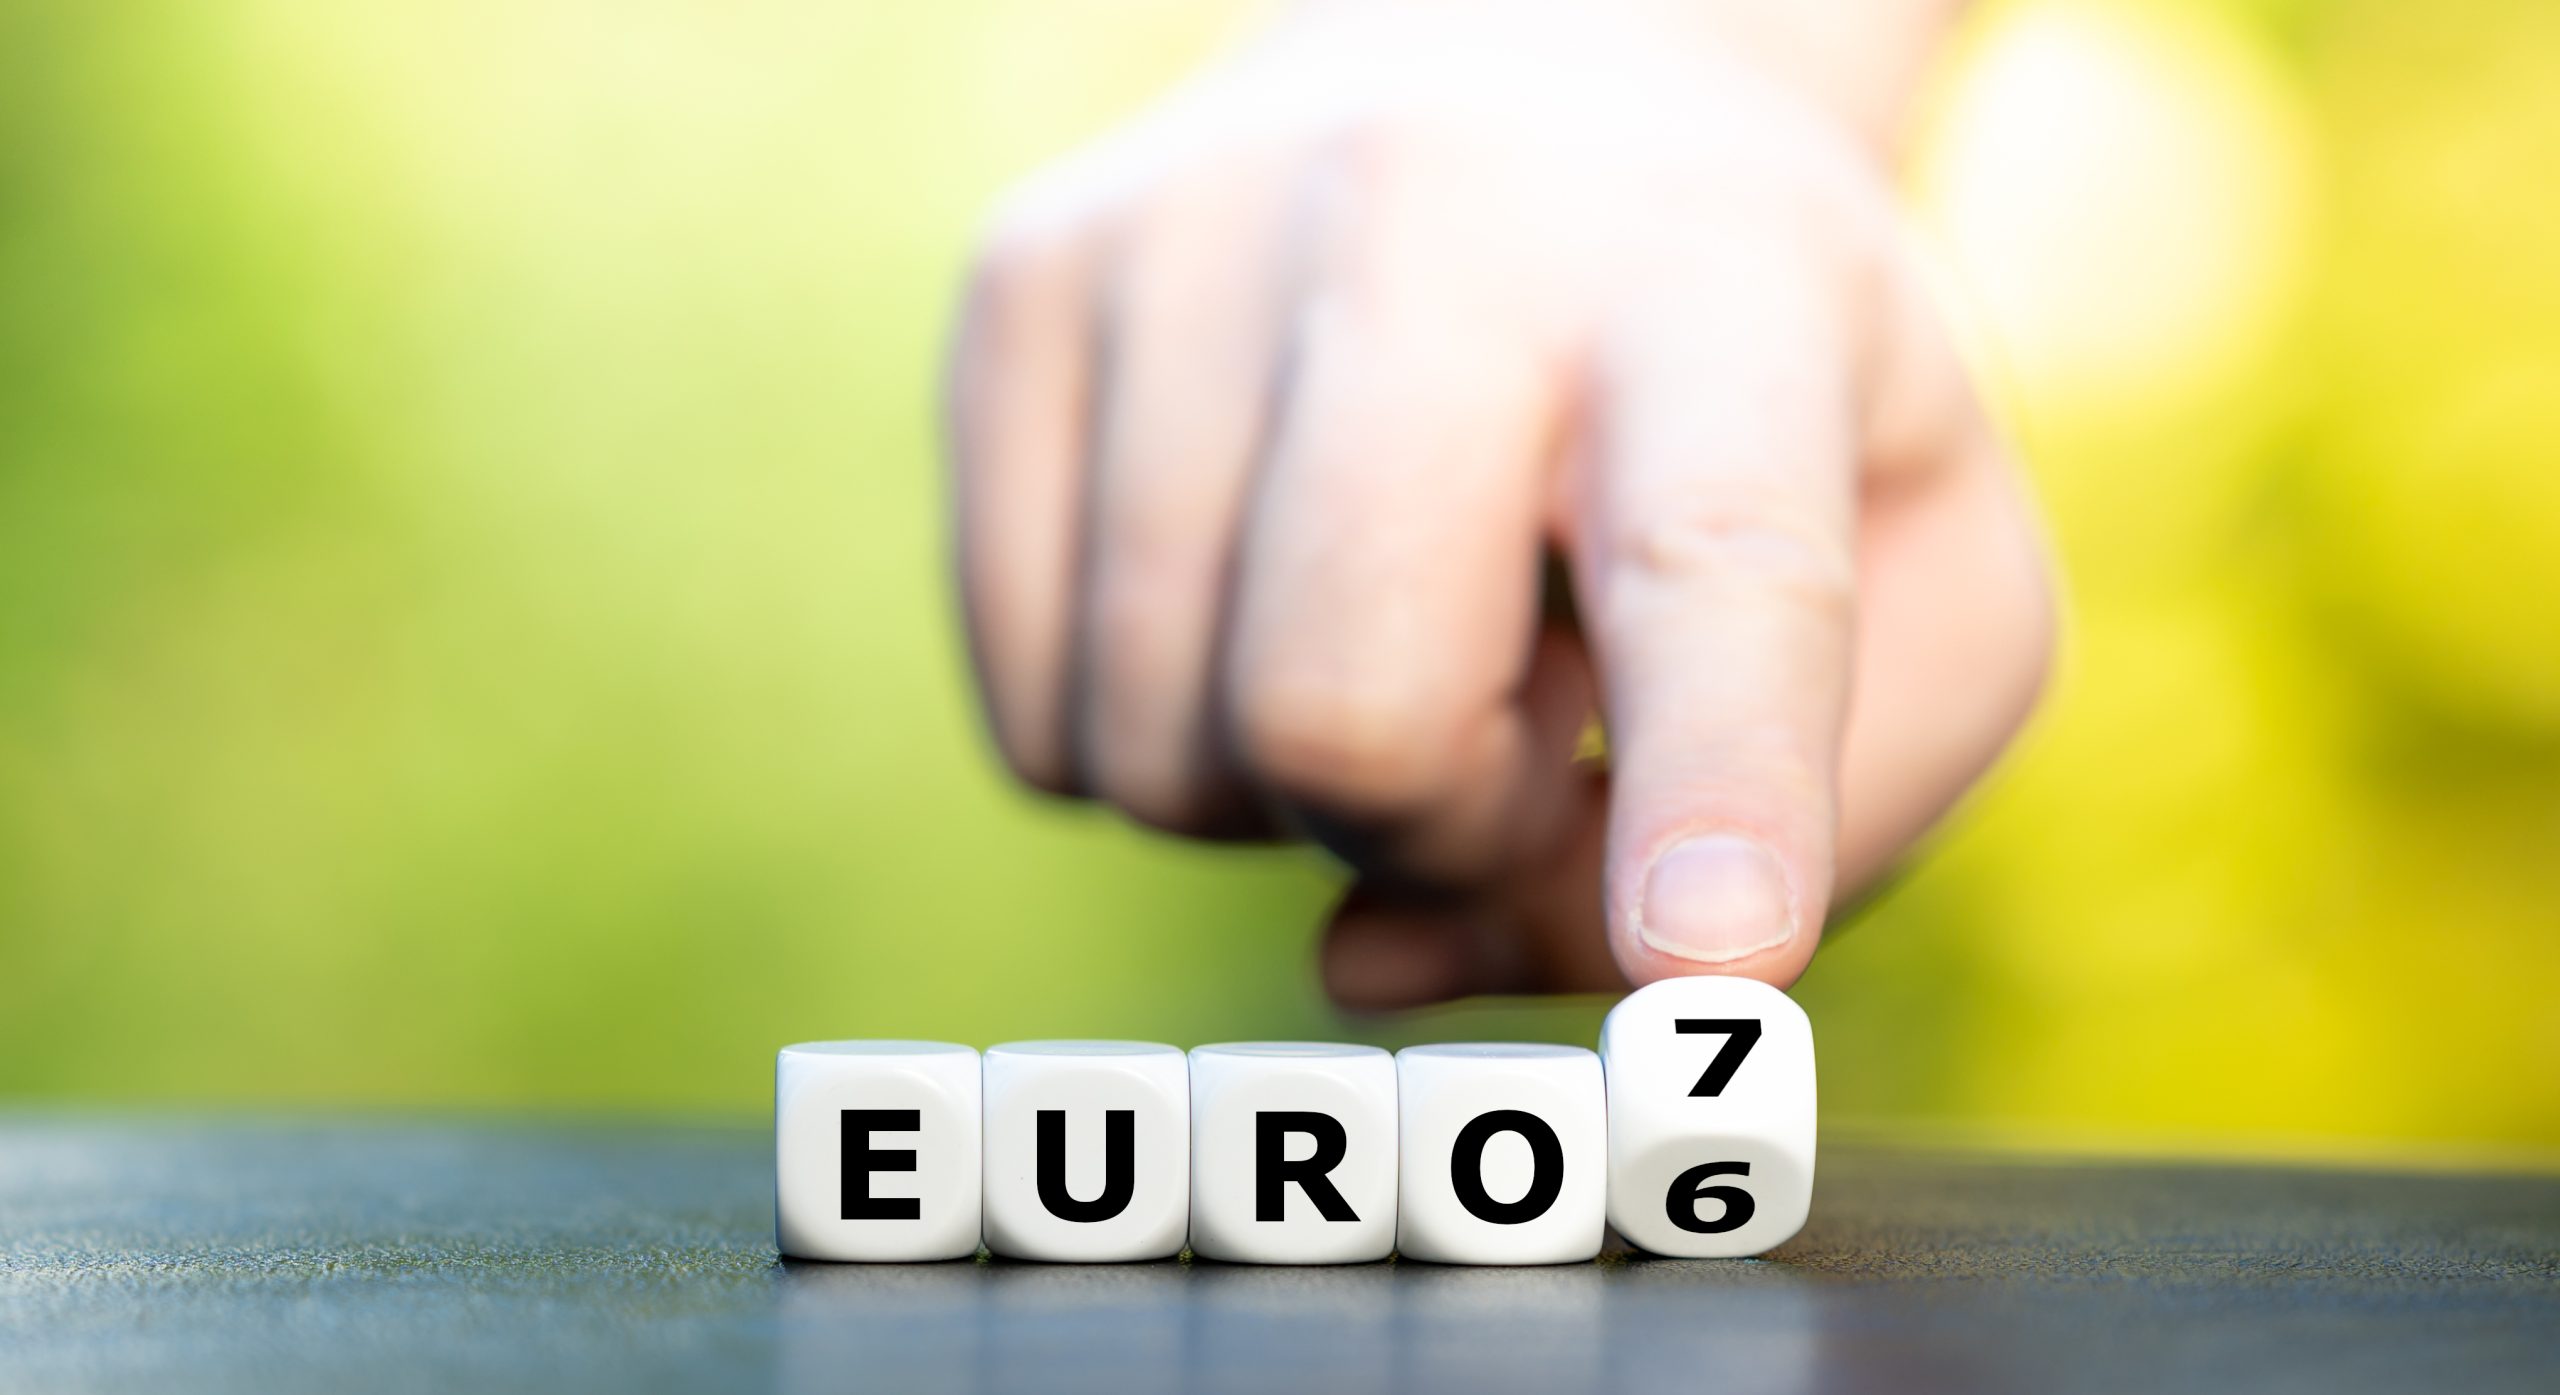 normativa euro 6 y 7